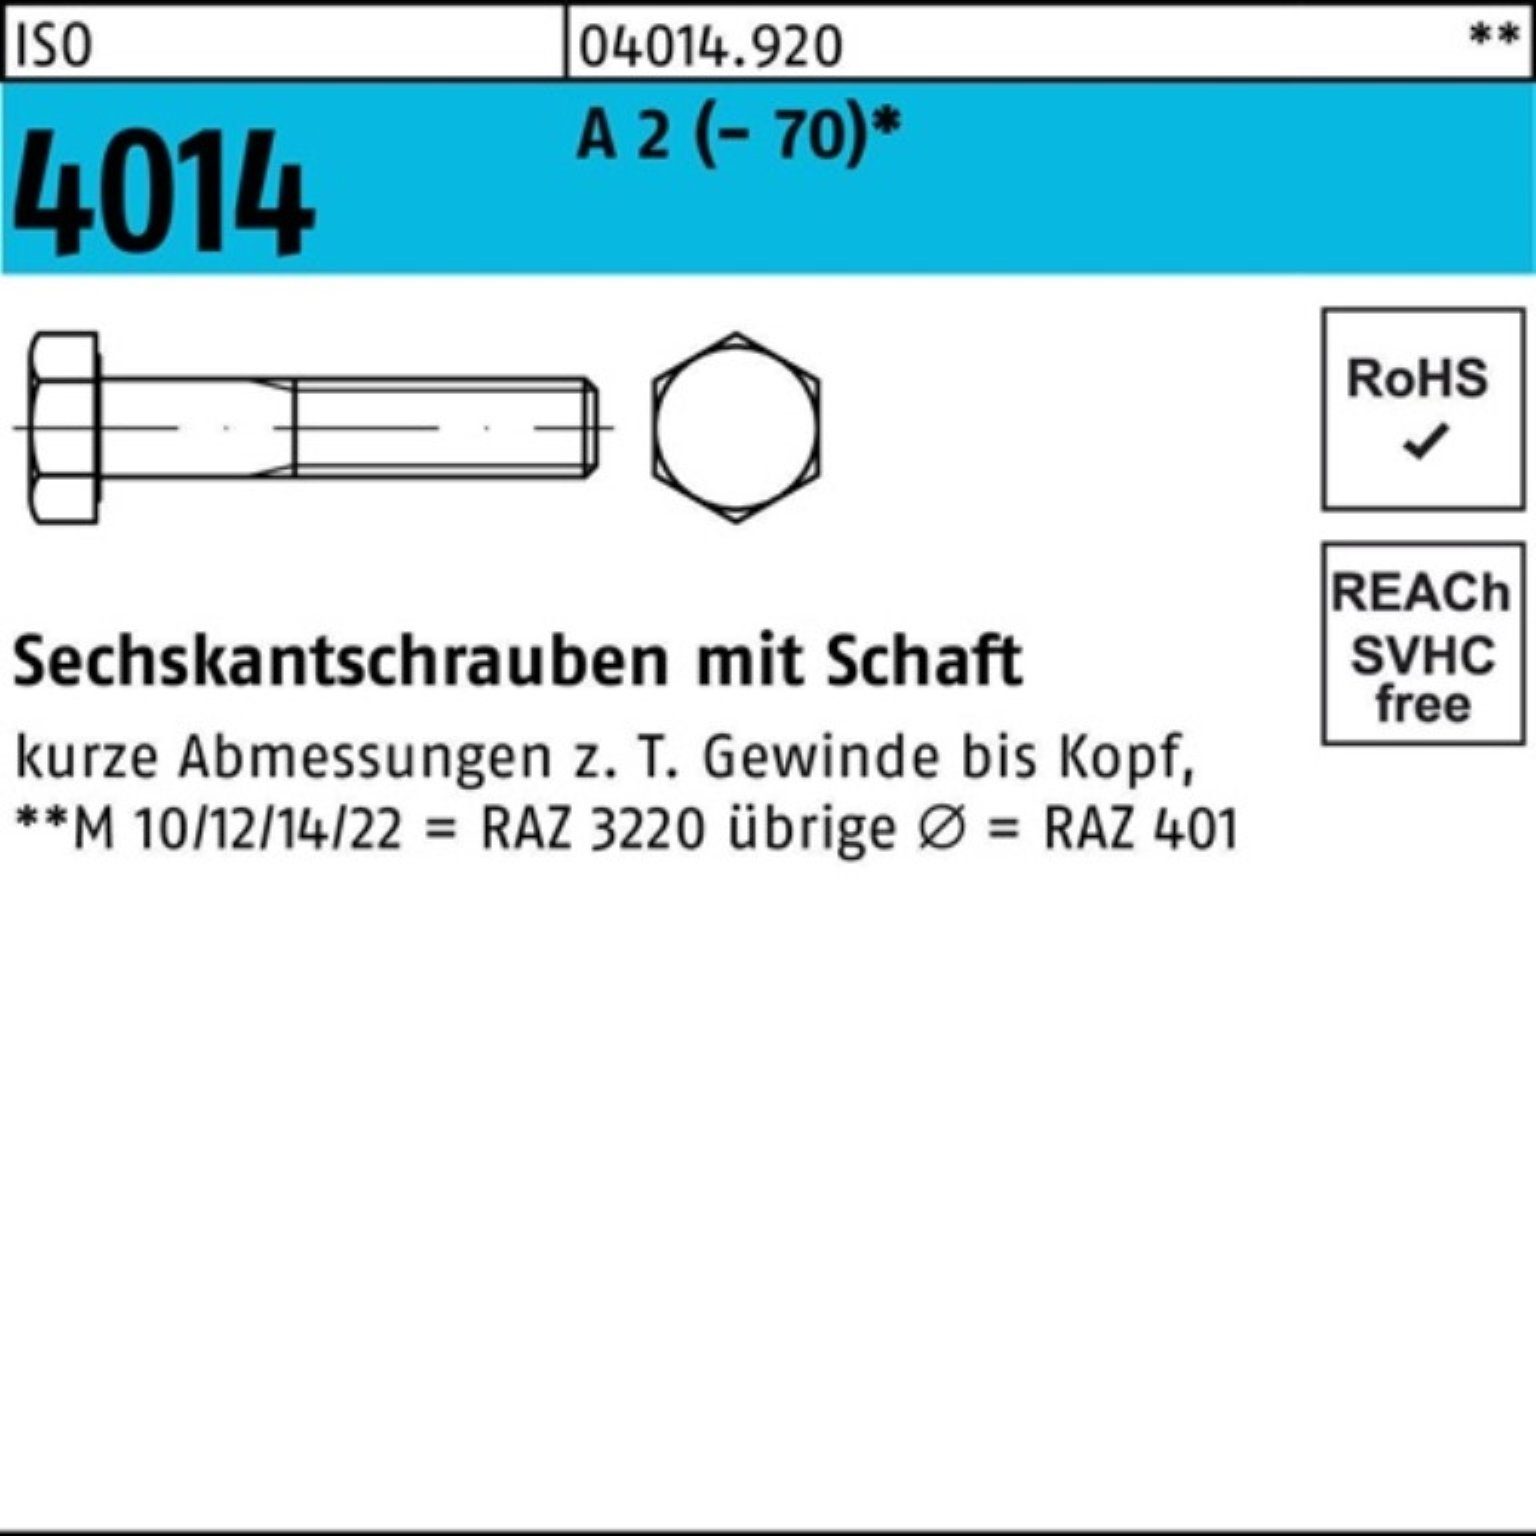 Bufab Sechskantschraube 100er Pack Sechskantschraube ISO 4014 Schaft M12x 190 A 2 (70) 1 St